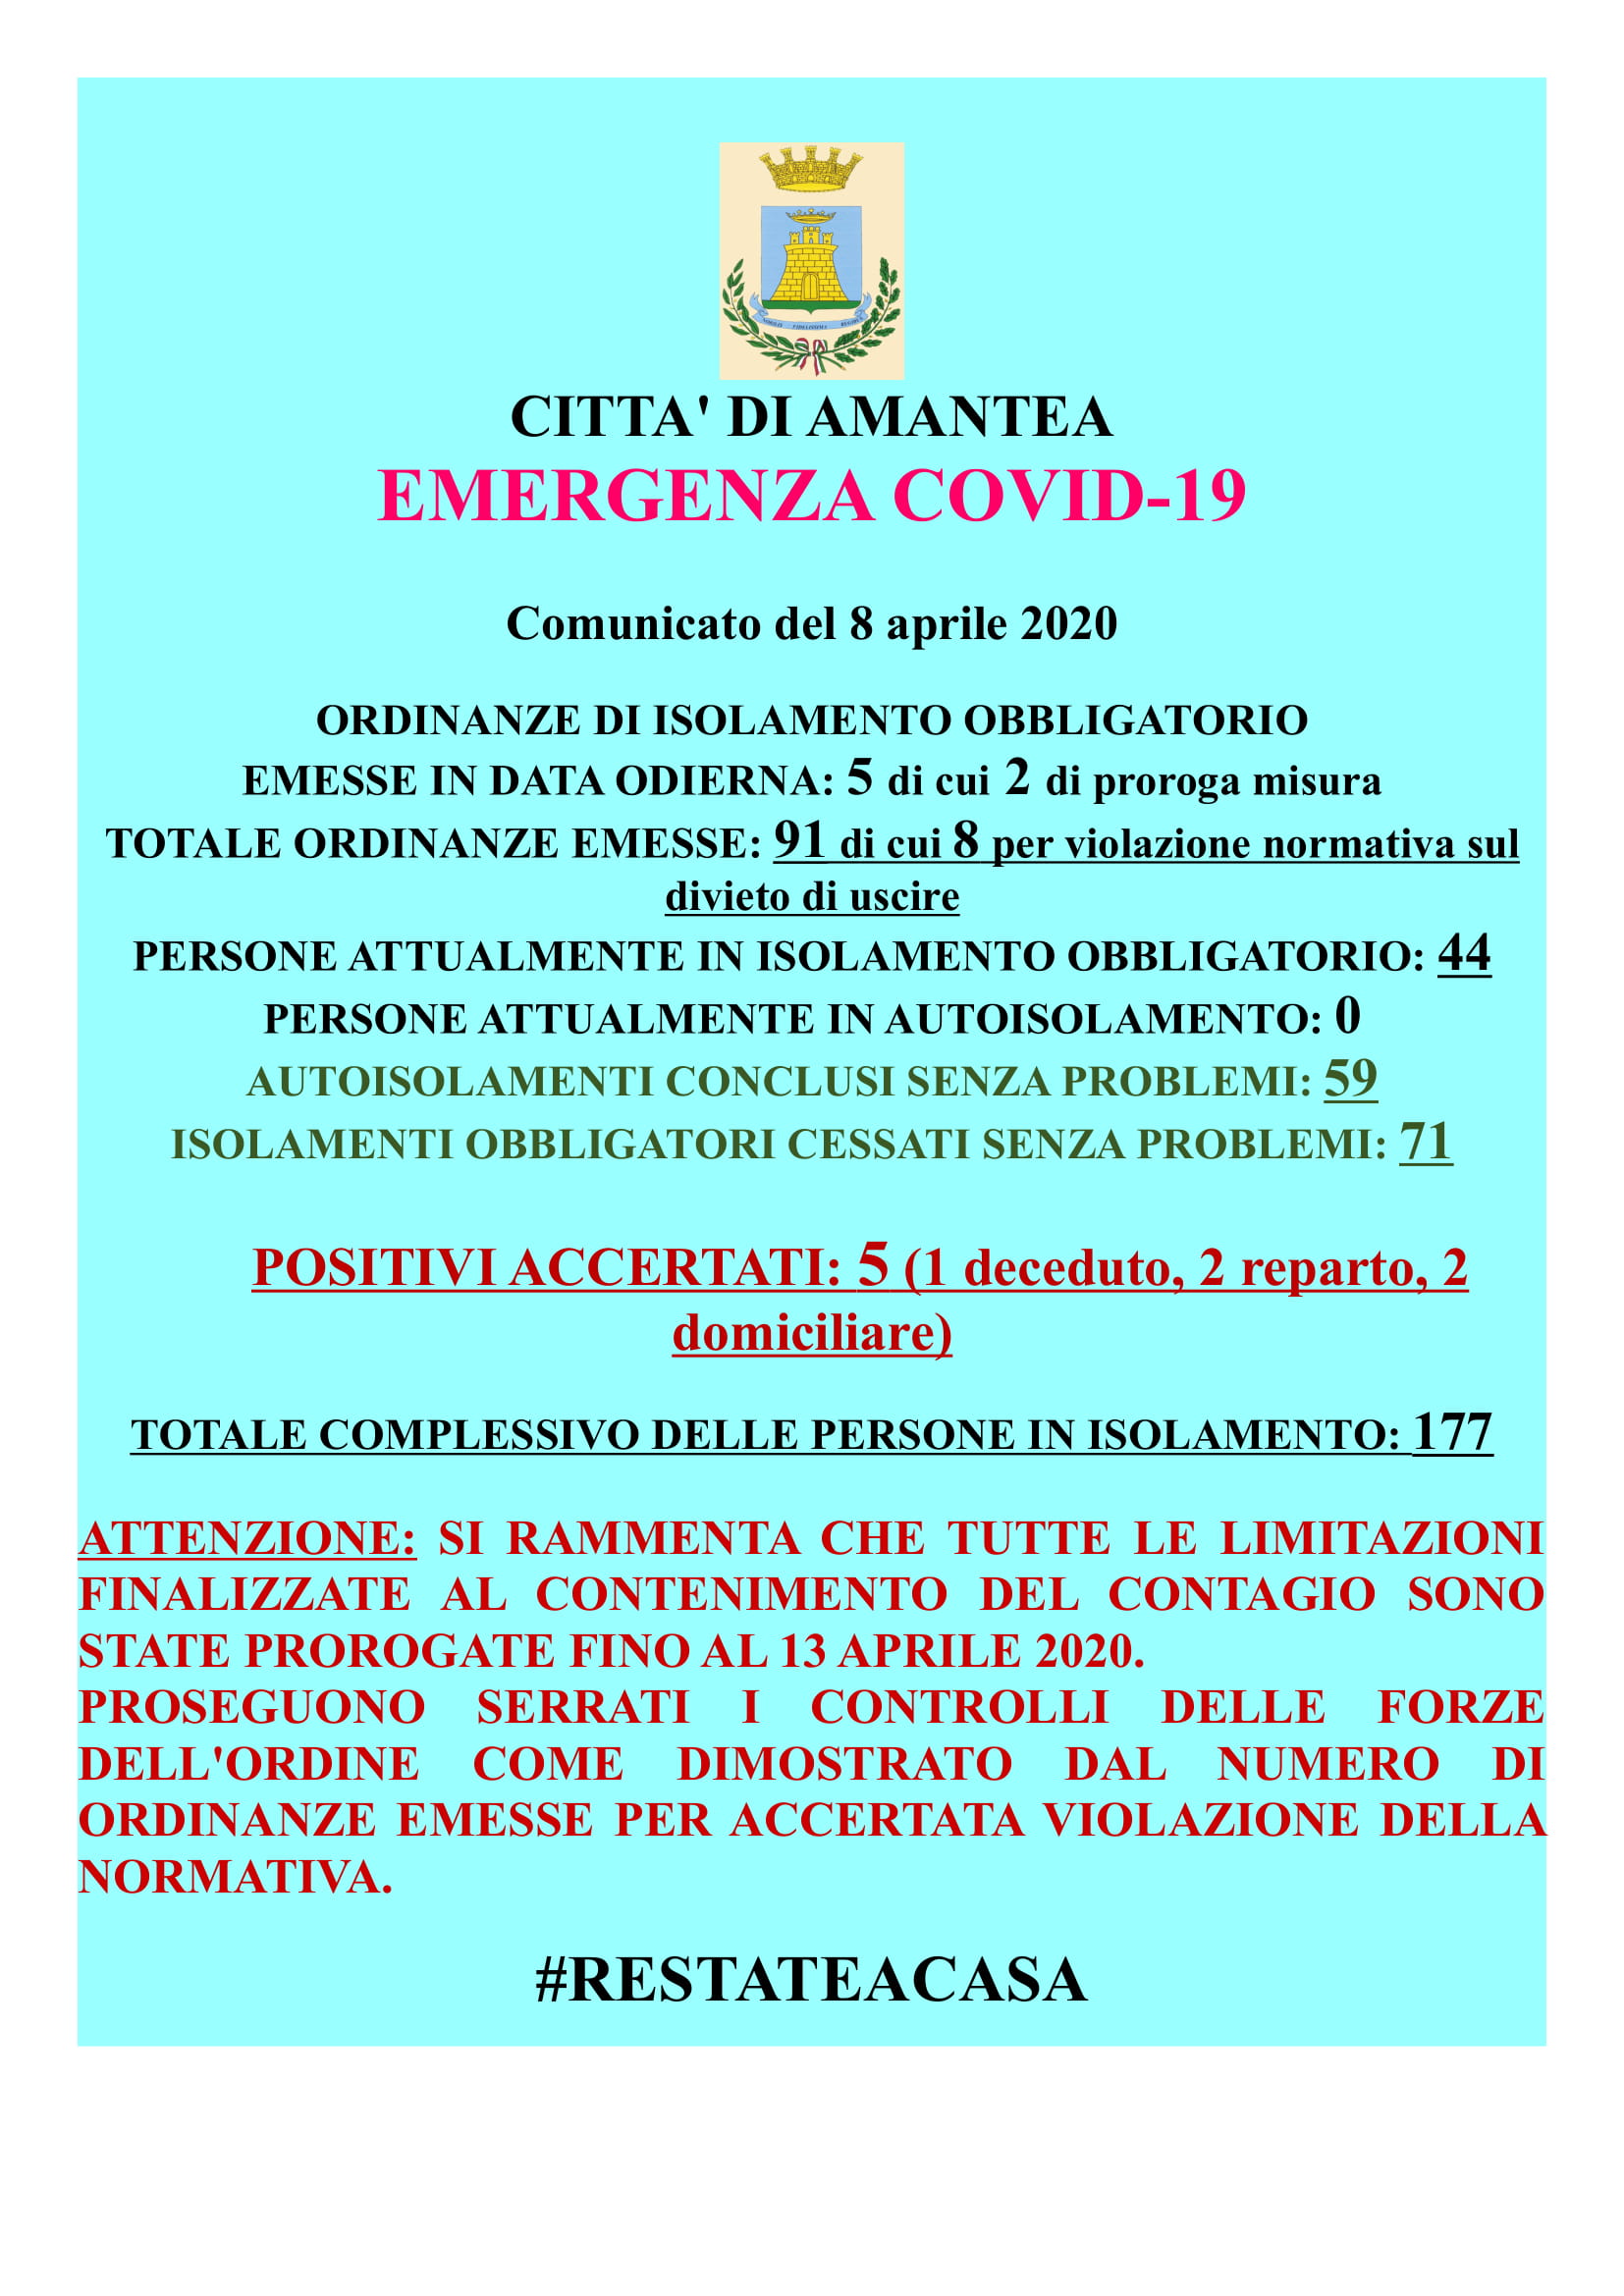 EMERGENZA COVID-19 Comunicato del 08 Aprile 2020